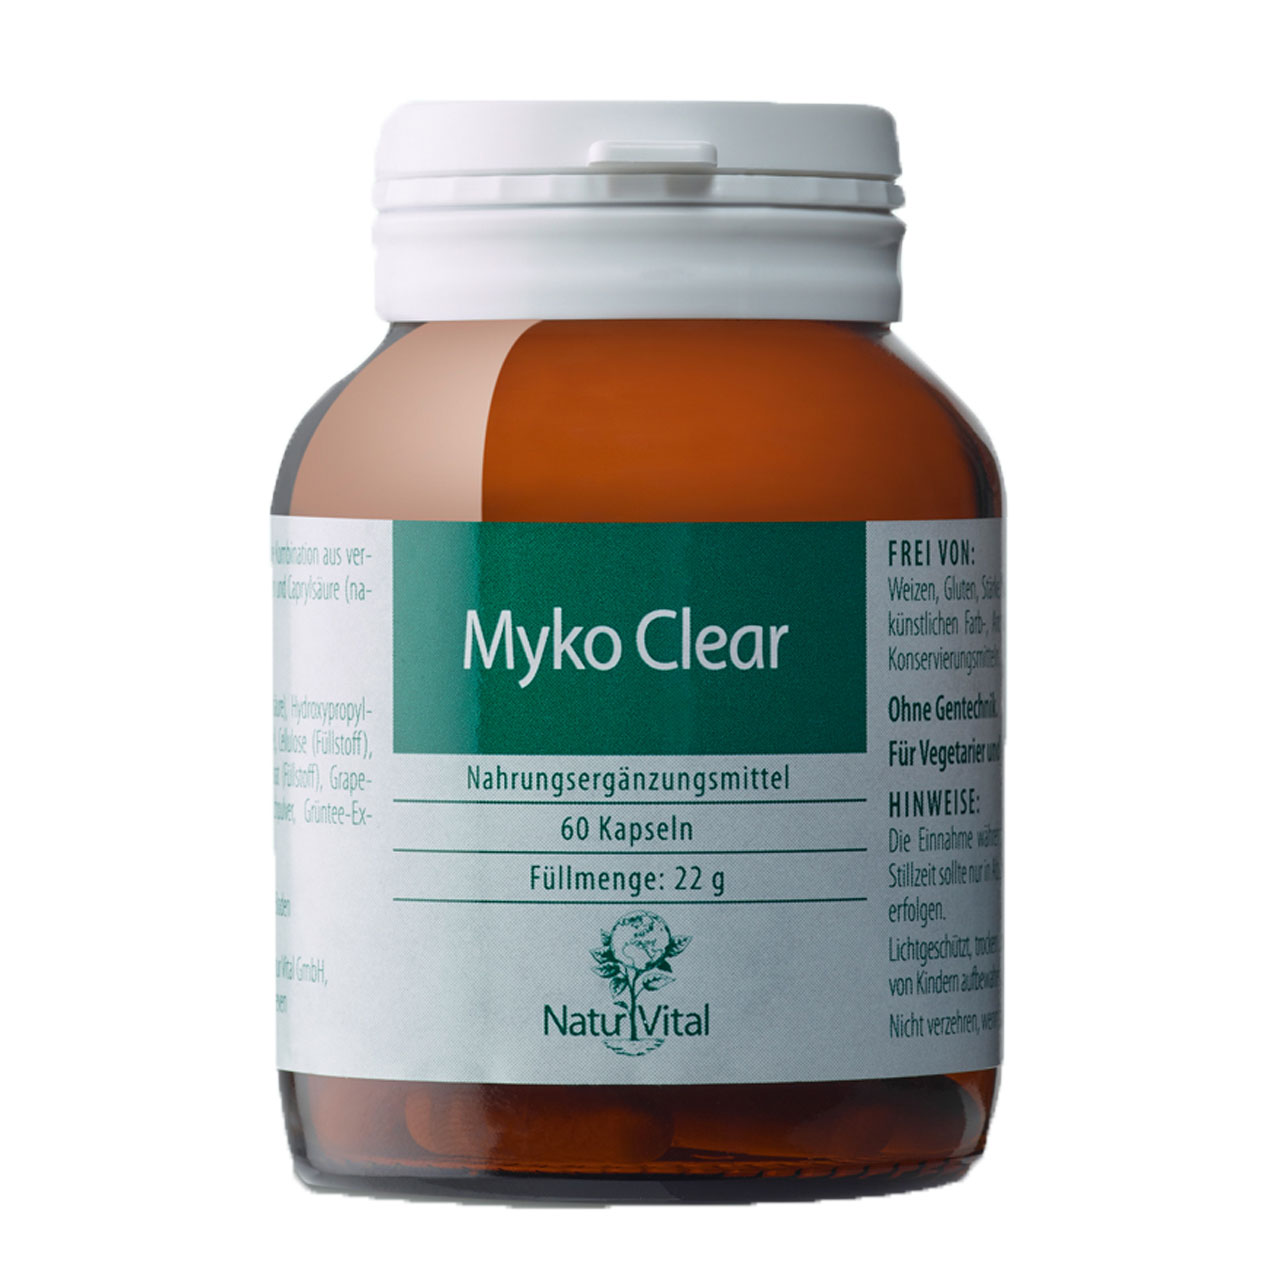 Myko Clear von Natur Vital beinhaltet 60 Kapseln